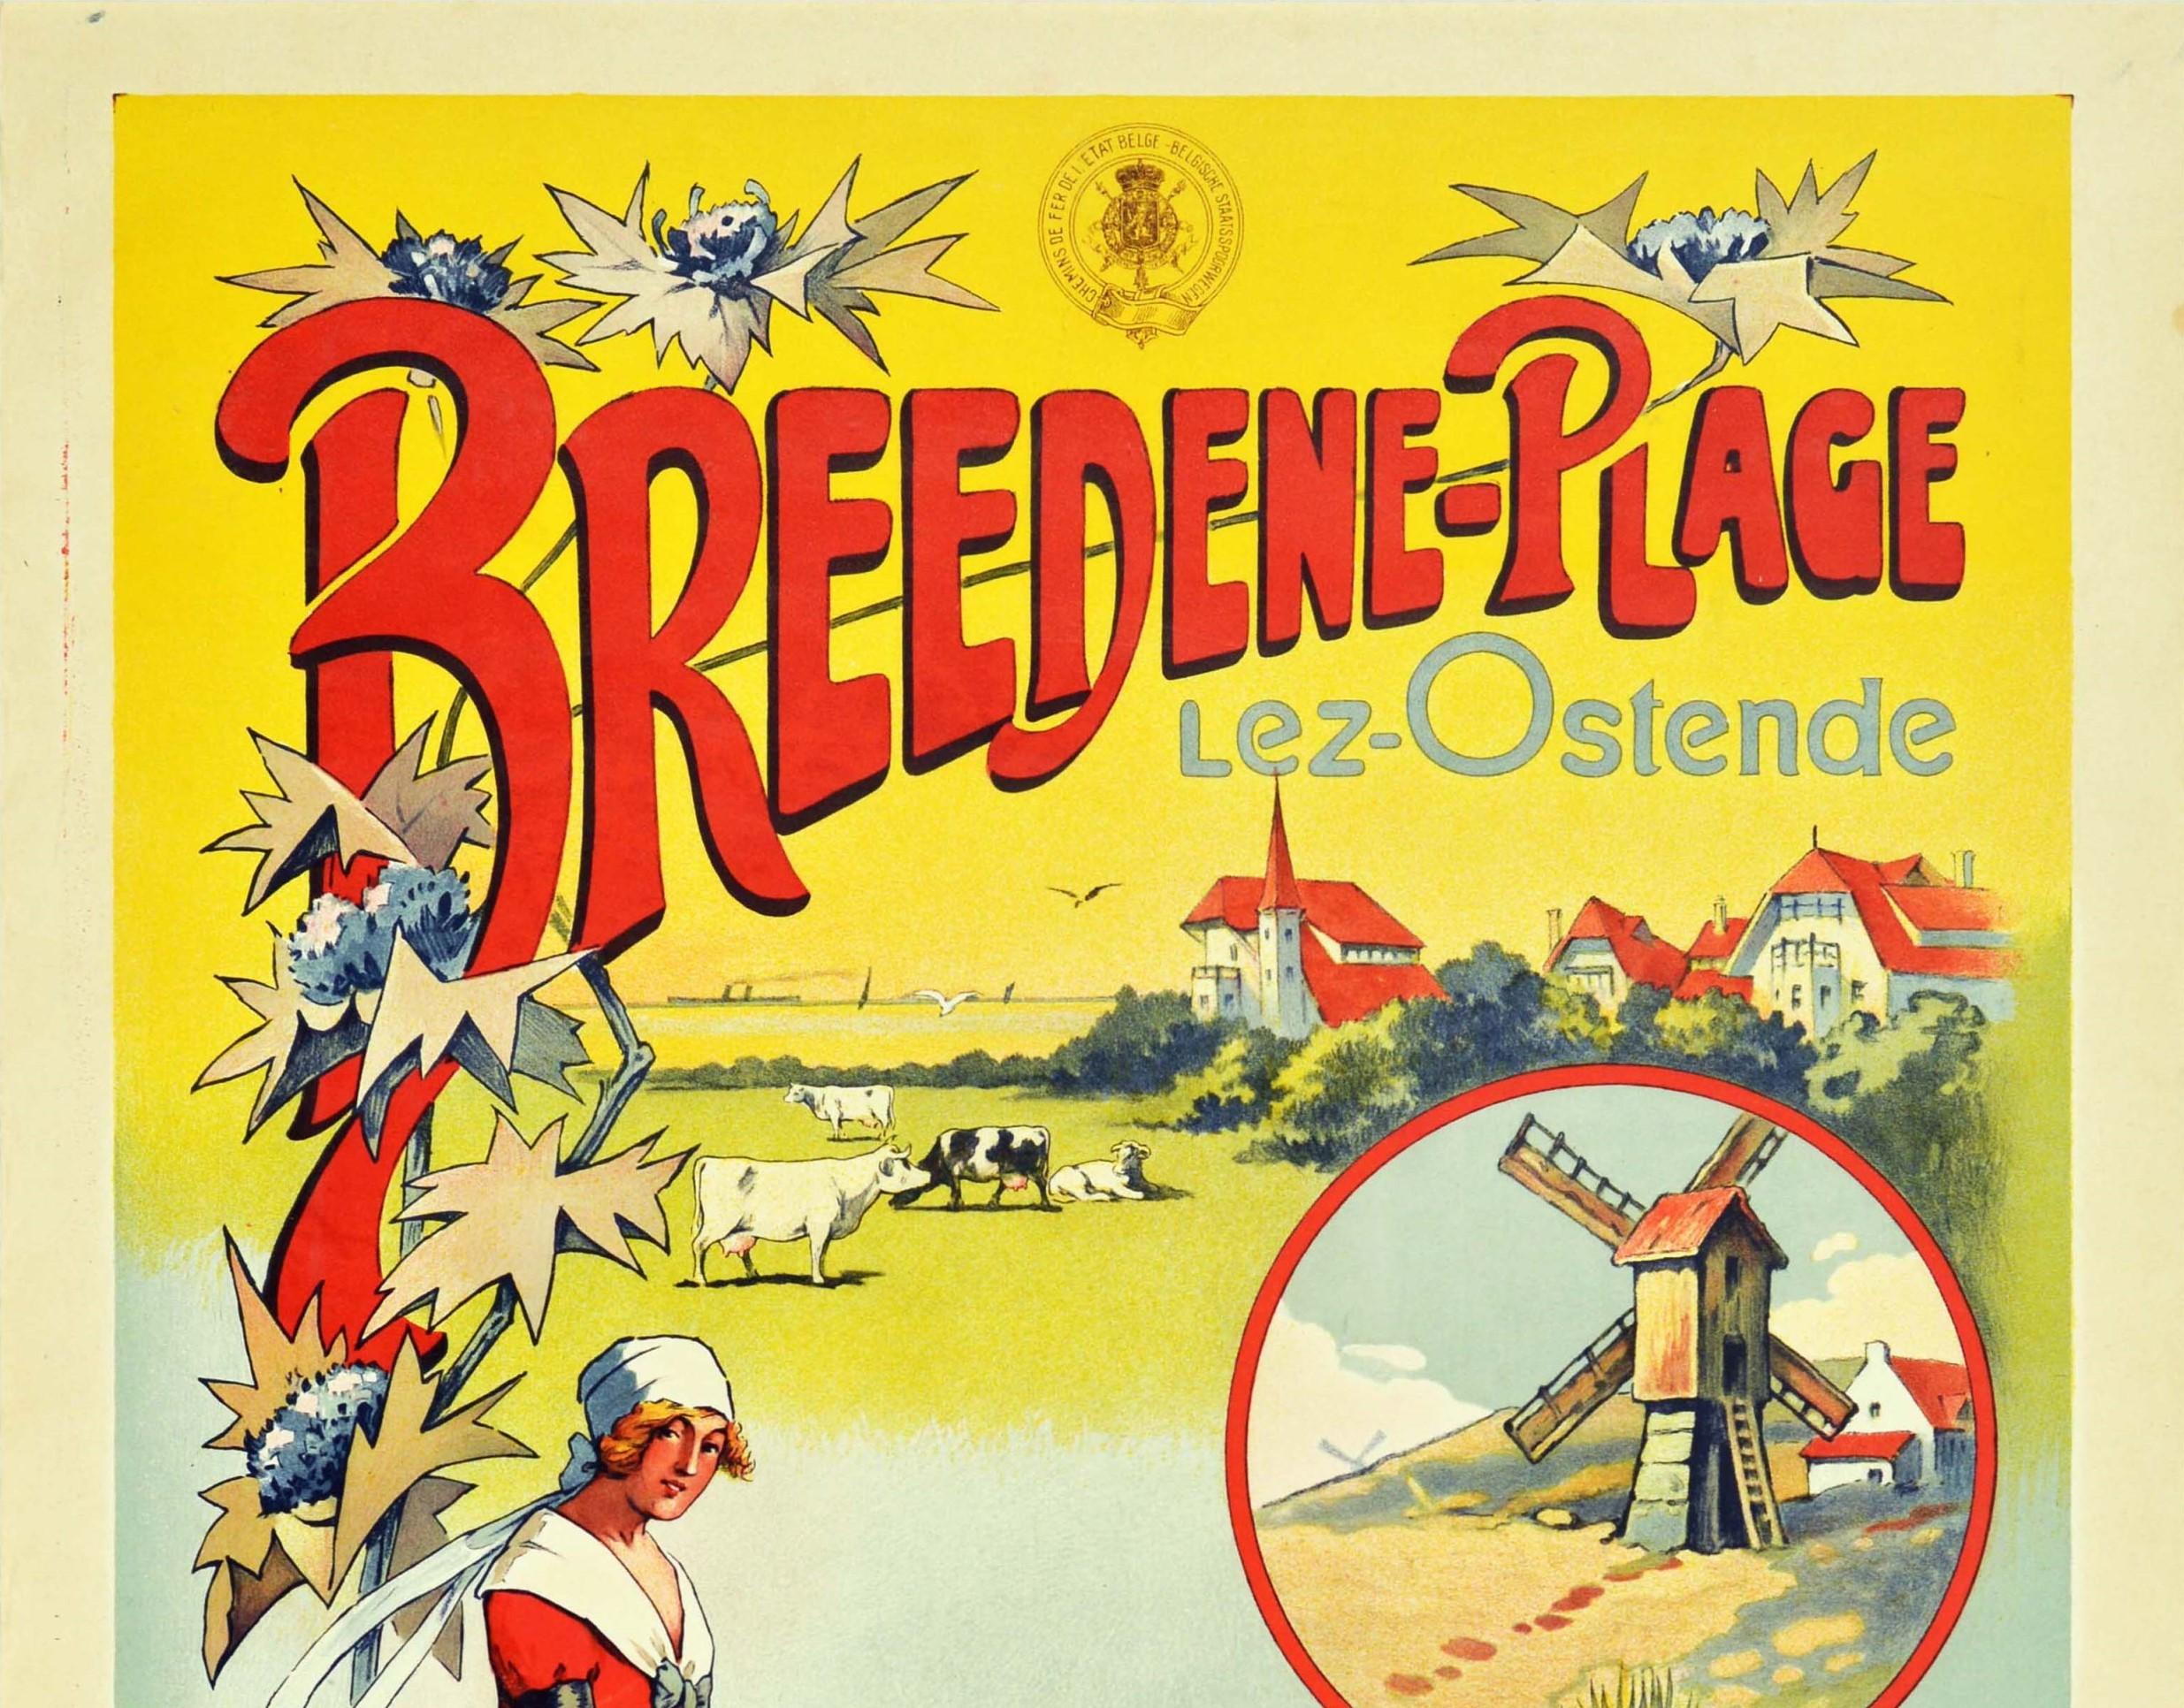 Original Antique Railway Travel Poster Breedene Plage Lez Ostende Beach Belgium  - Print by Unknown